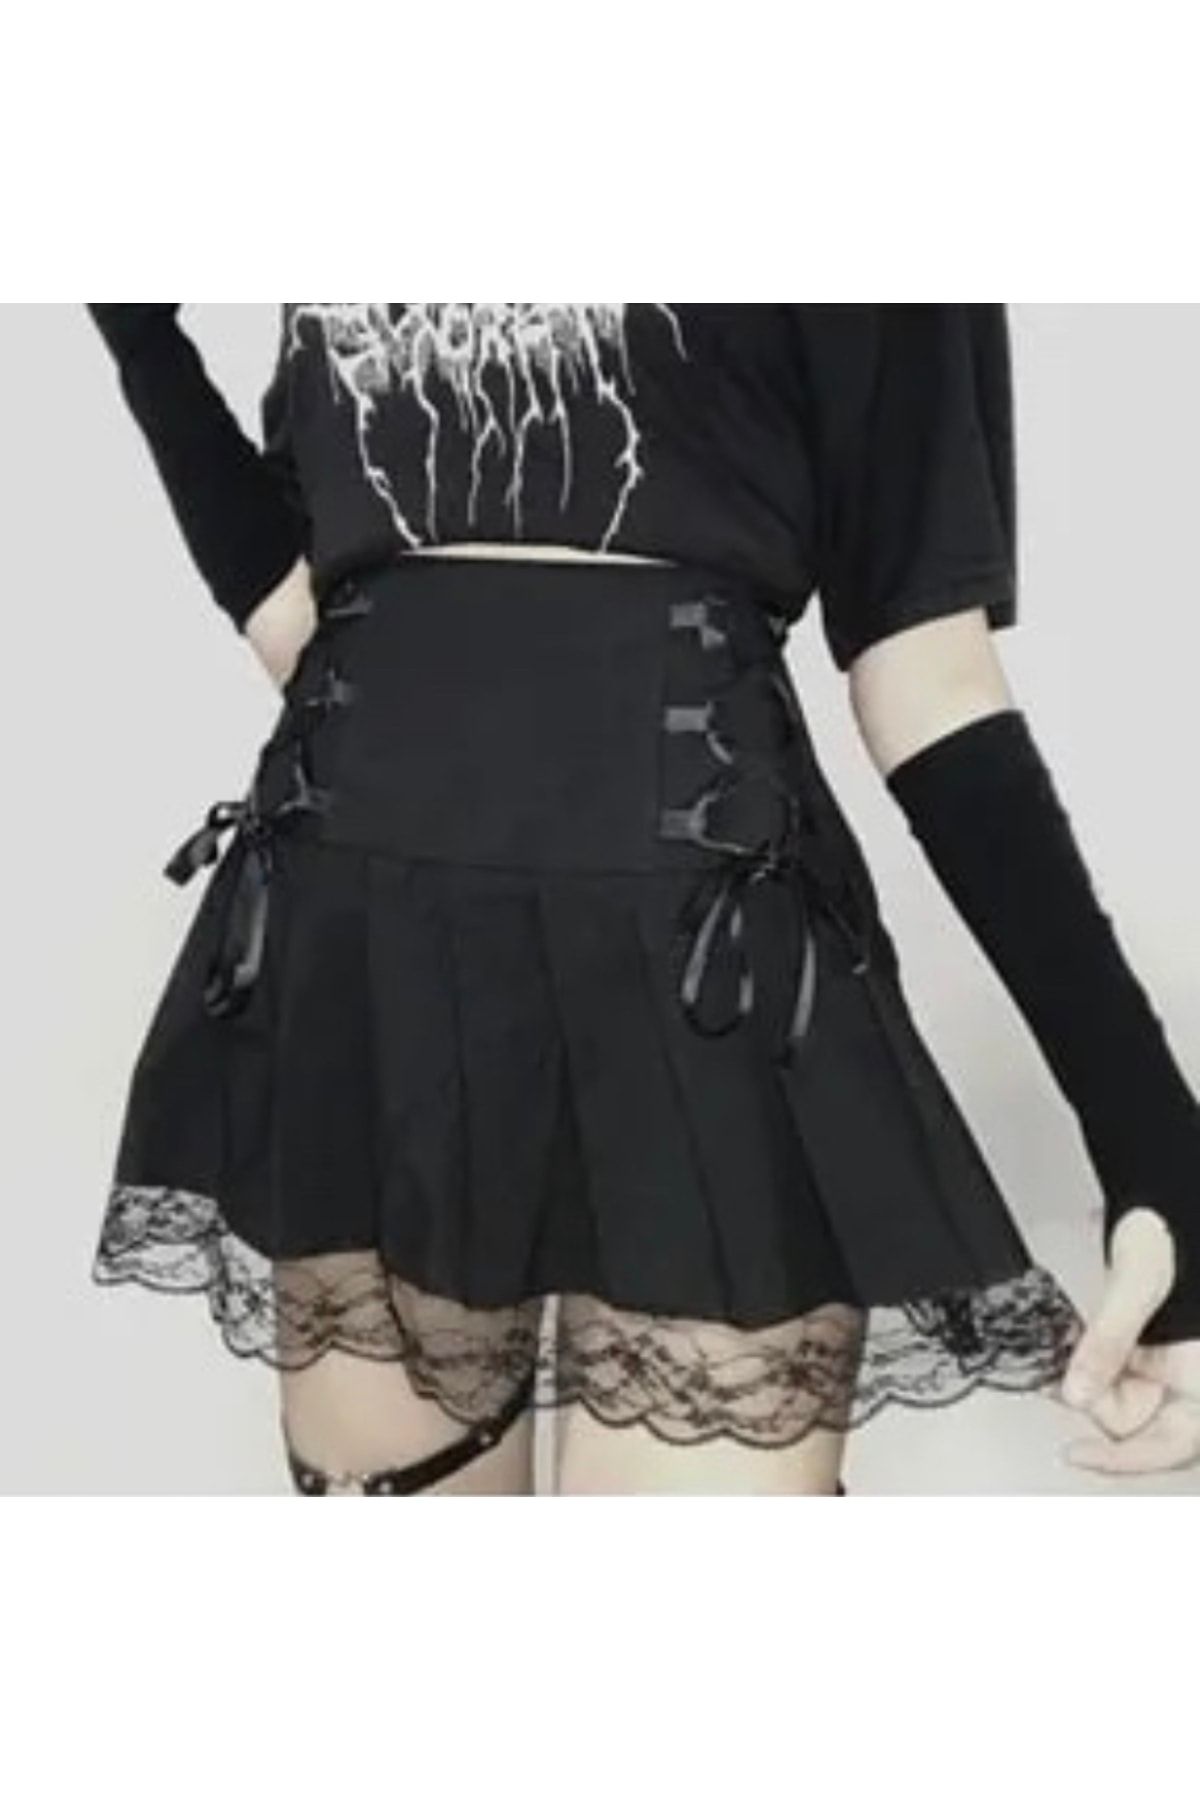 Köstebek Gothic Harajuku Fashion Danteli Pileli Siyah Etek